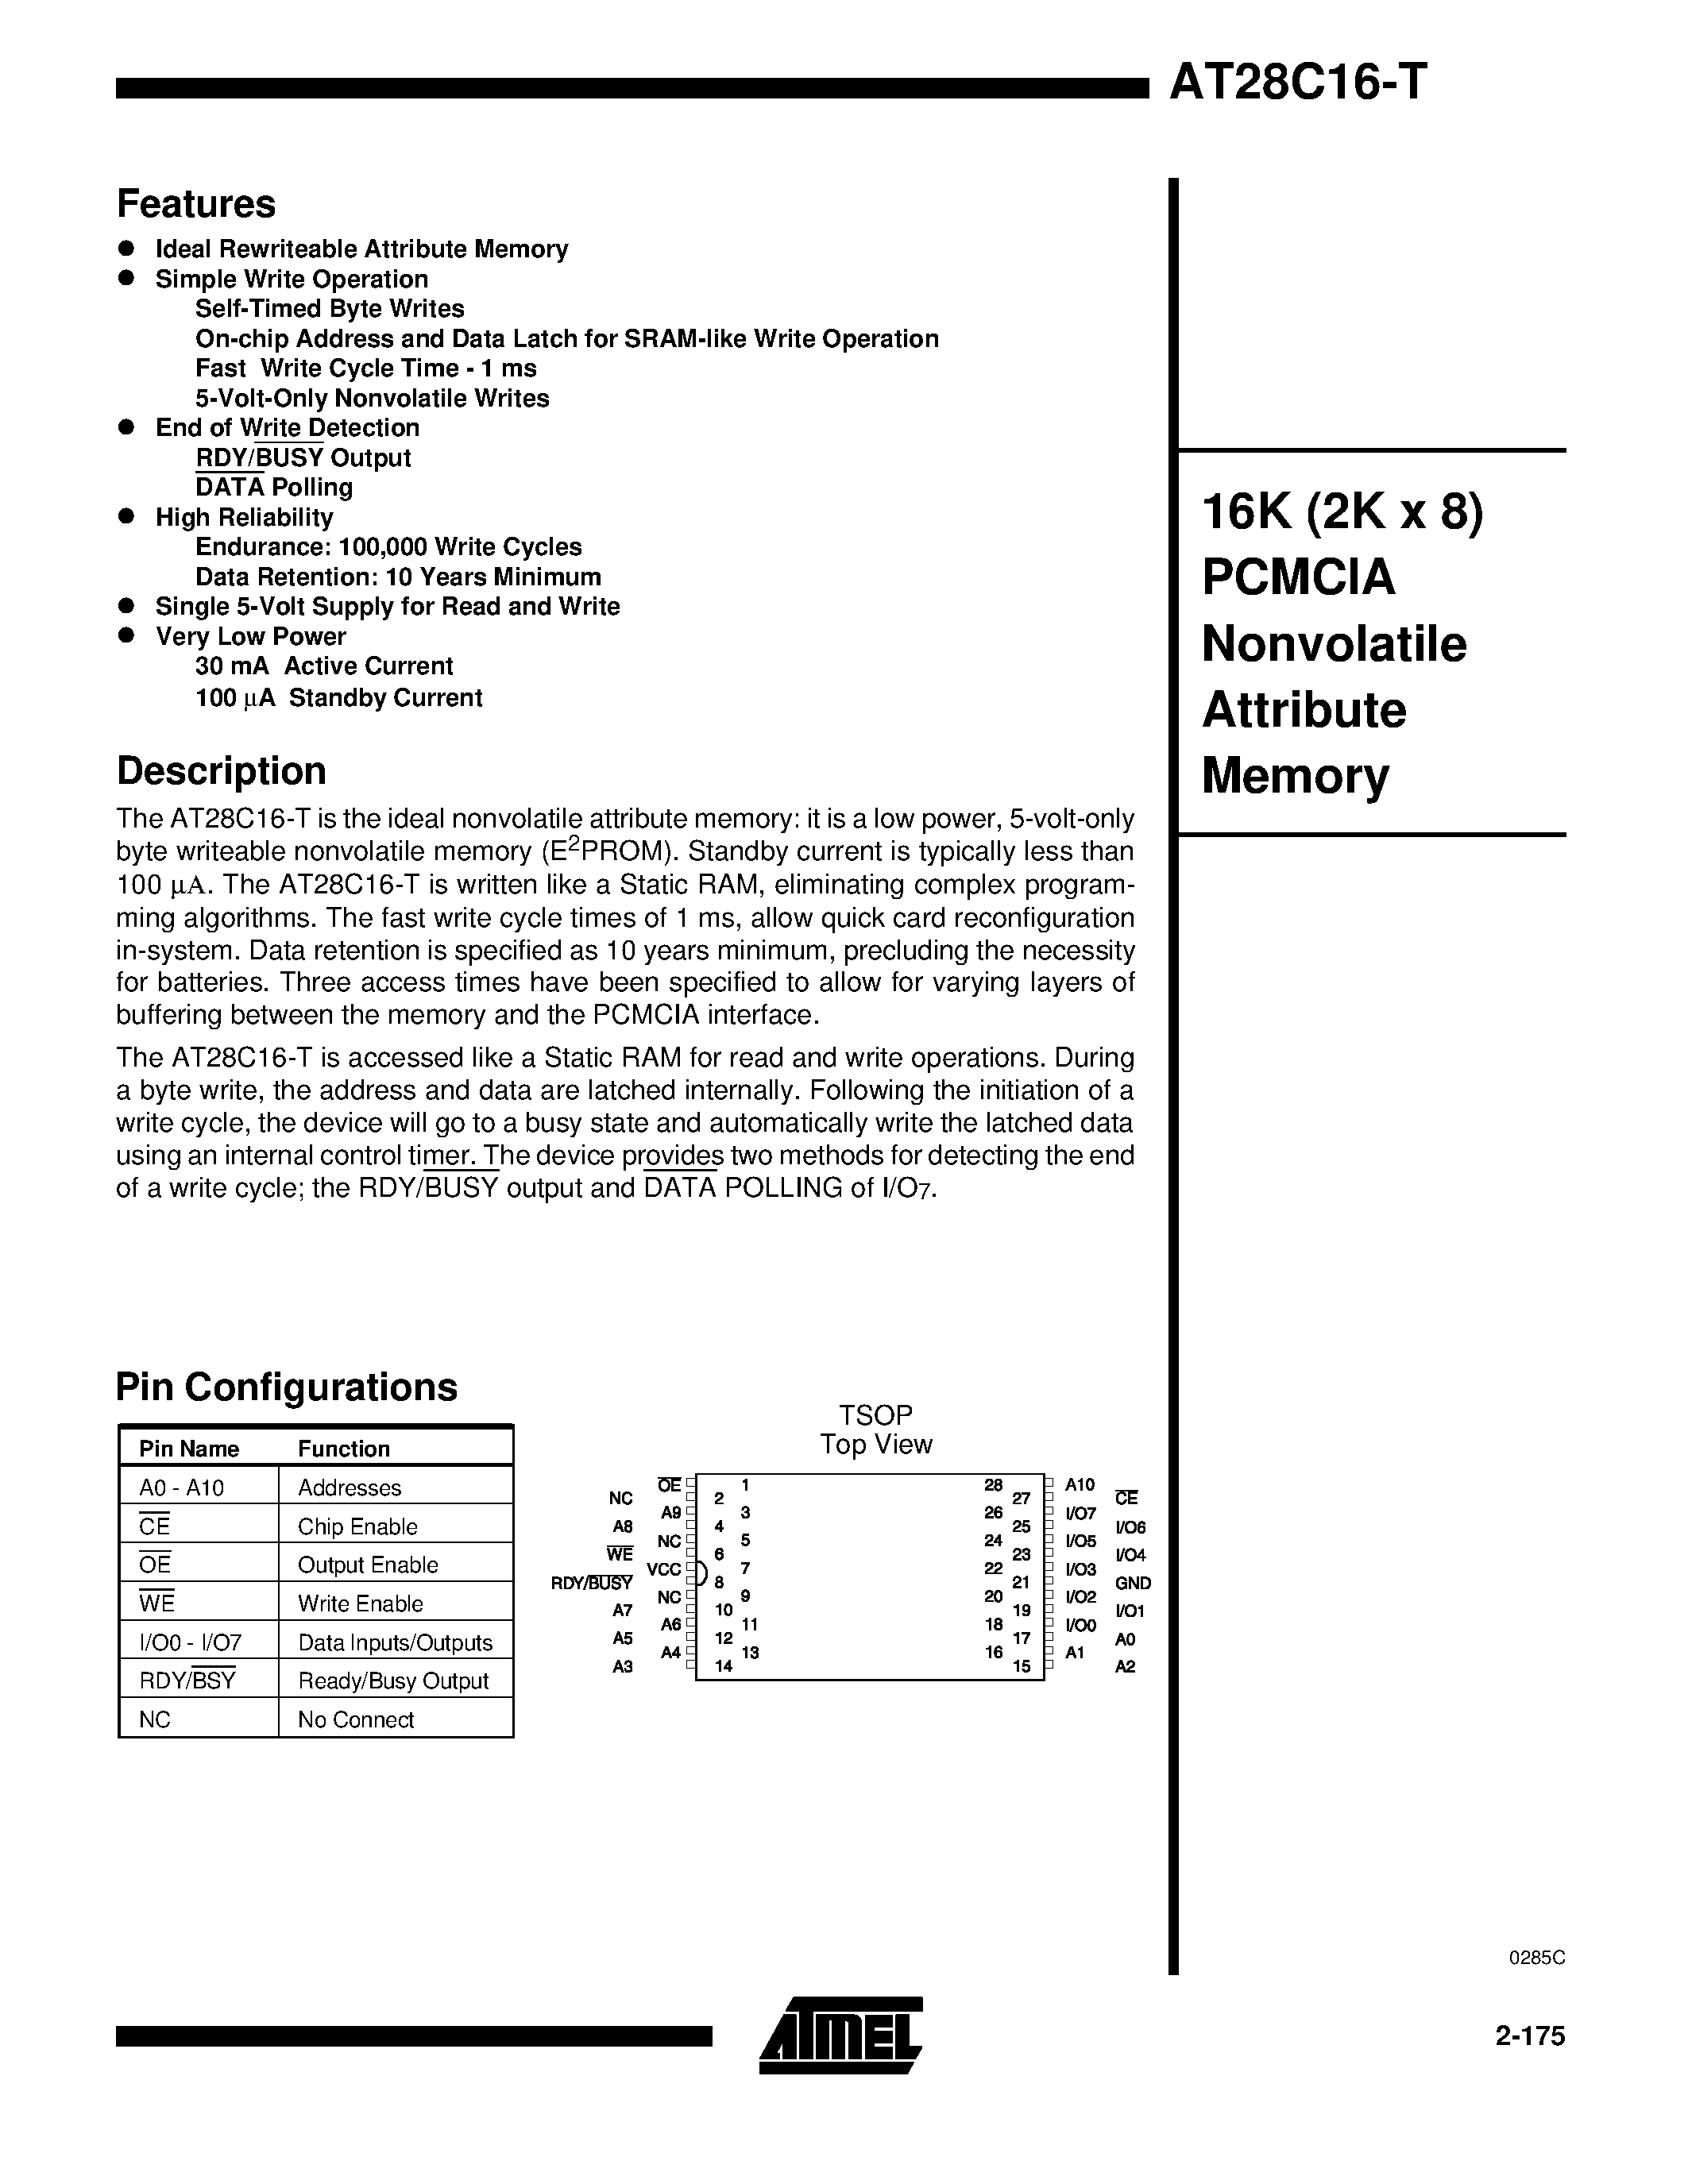 Даташит AT28C16-T - 16K 2K x 8 PCMCIA Nonvolatile Attribute Memory страница 1